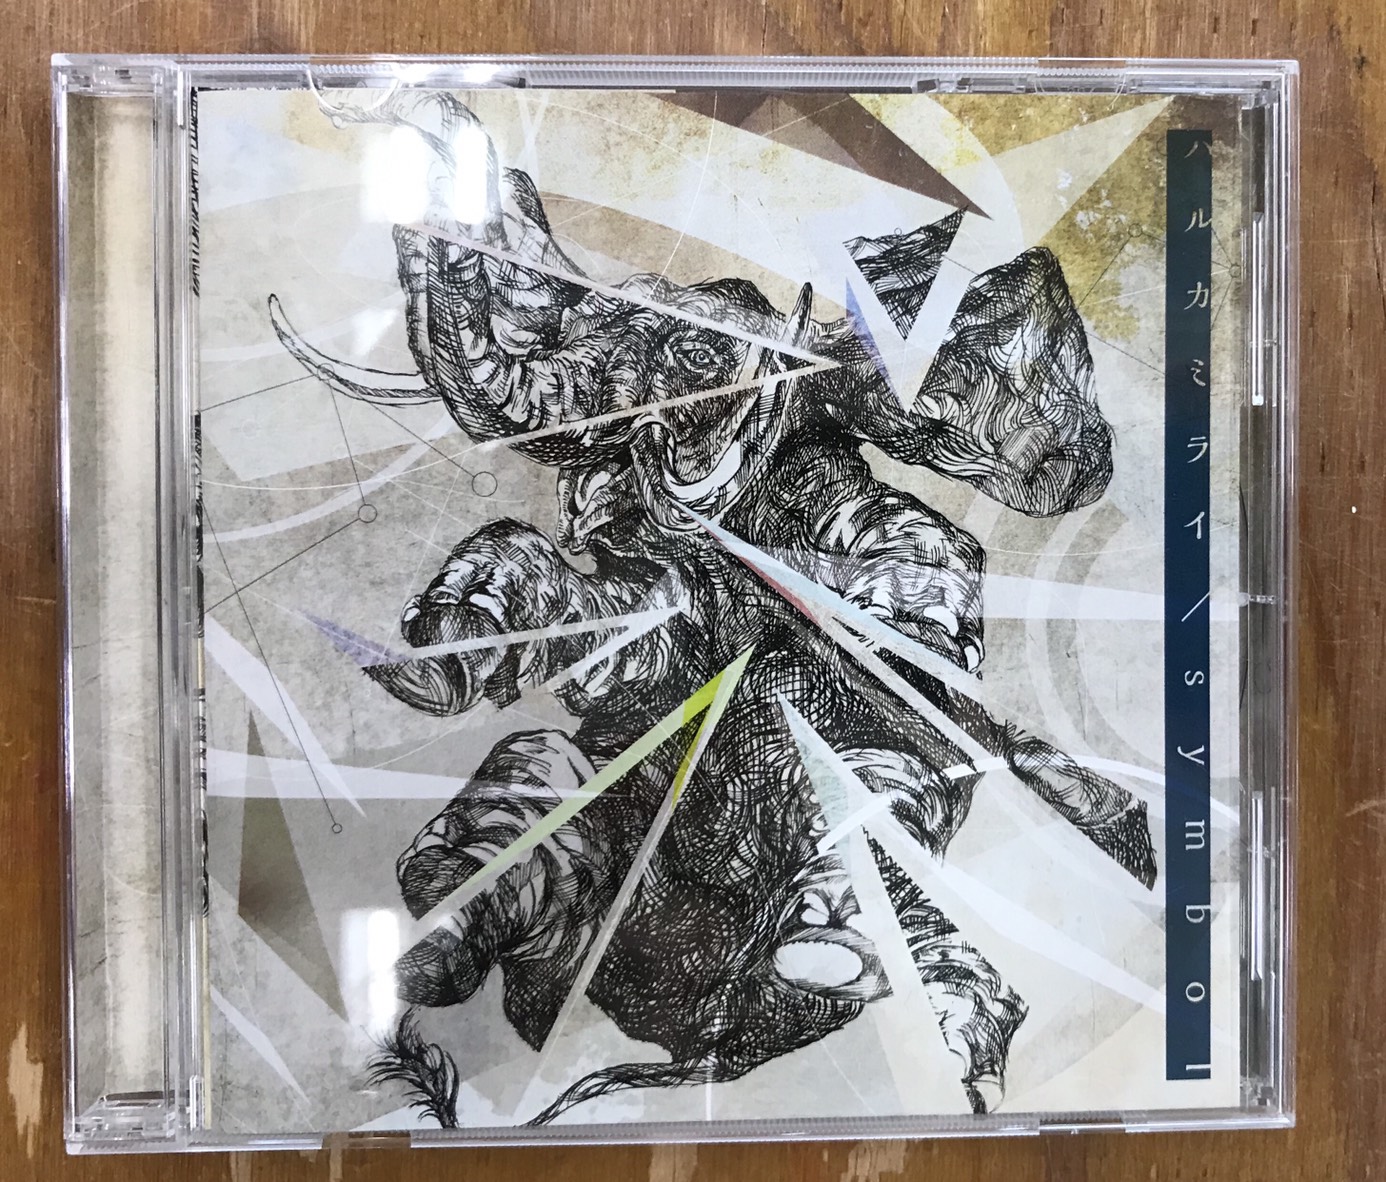 ハルカミライ のデモCD - CD